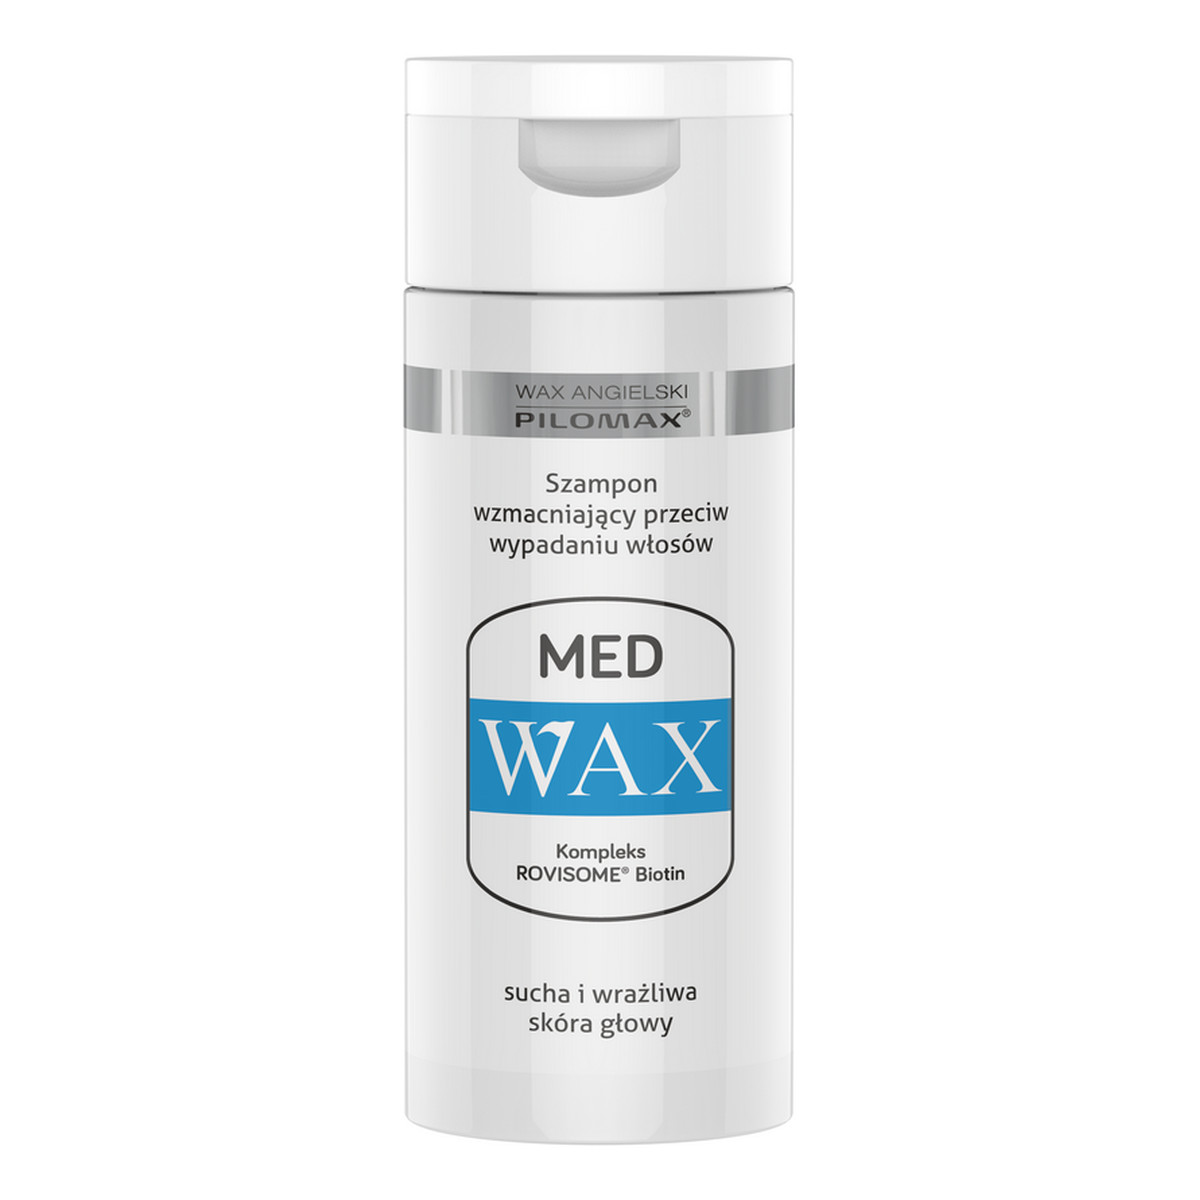 Pilomax Wax Med Szampon wzmacniający przeciw wypadaniu włosów 150ml